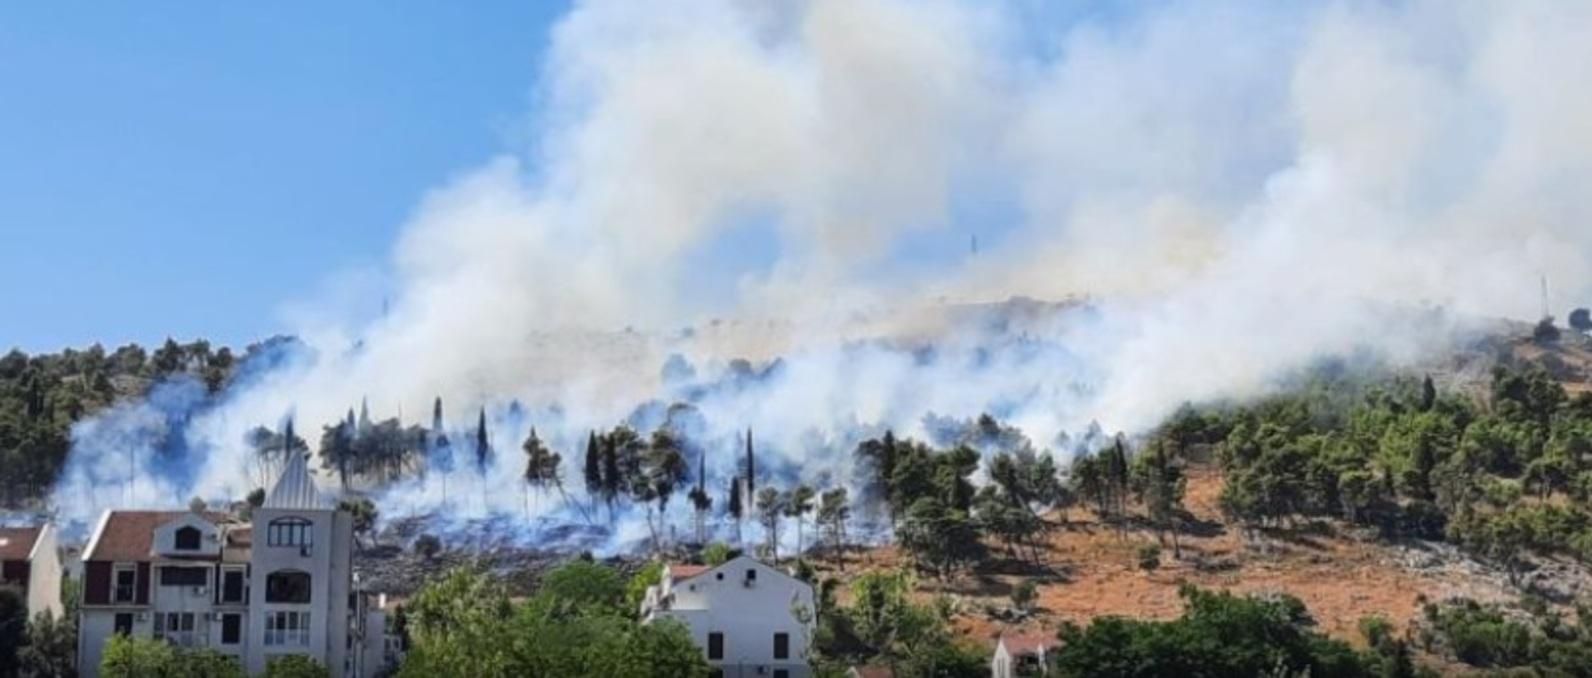 Ще одна курортна країна у вогні: пожежа спалахнула у Чорногорії